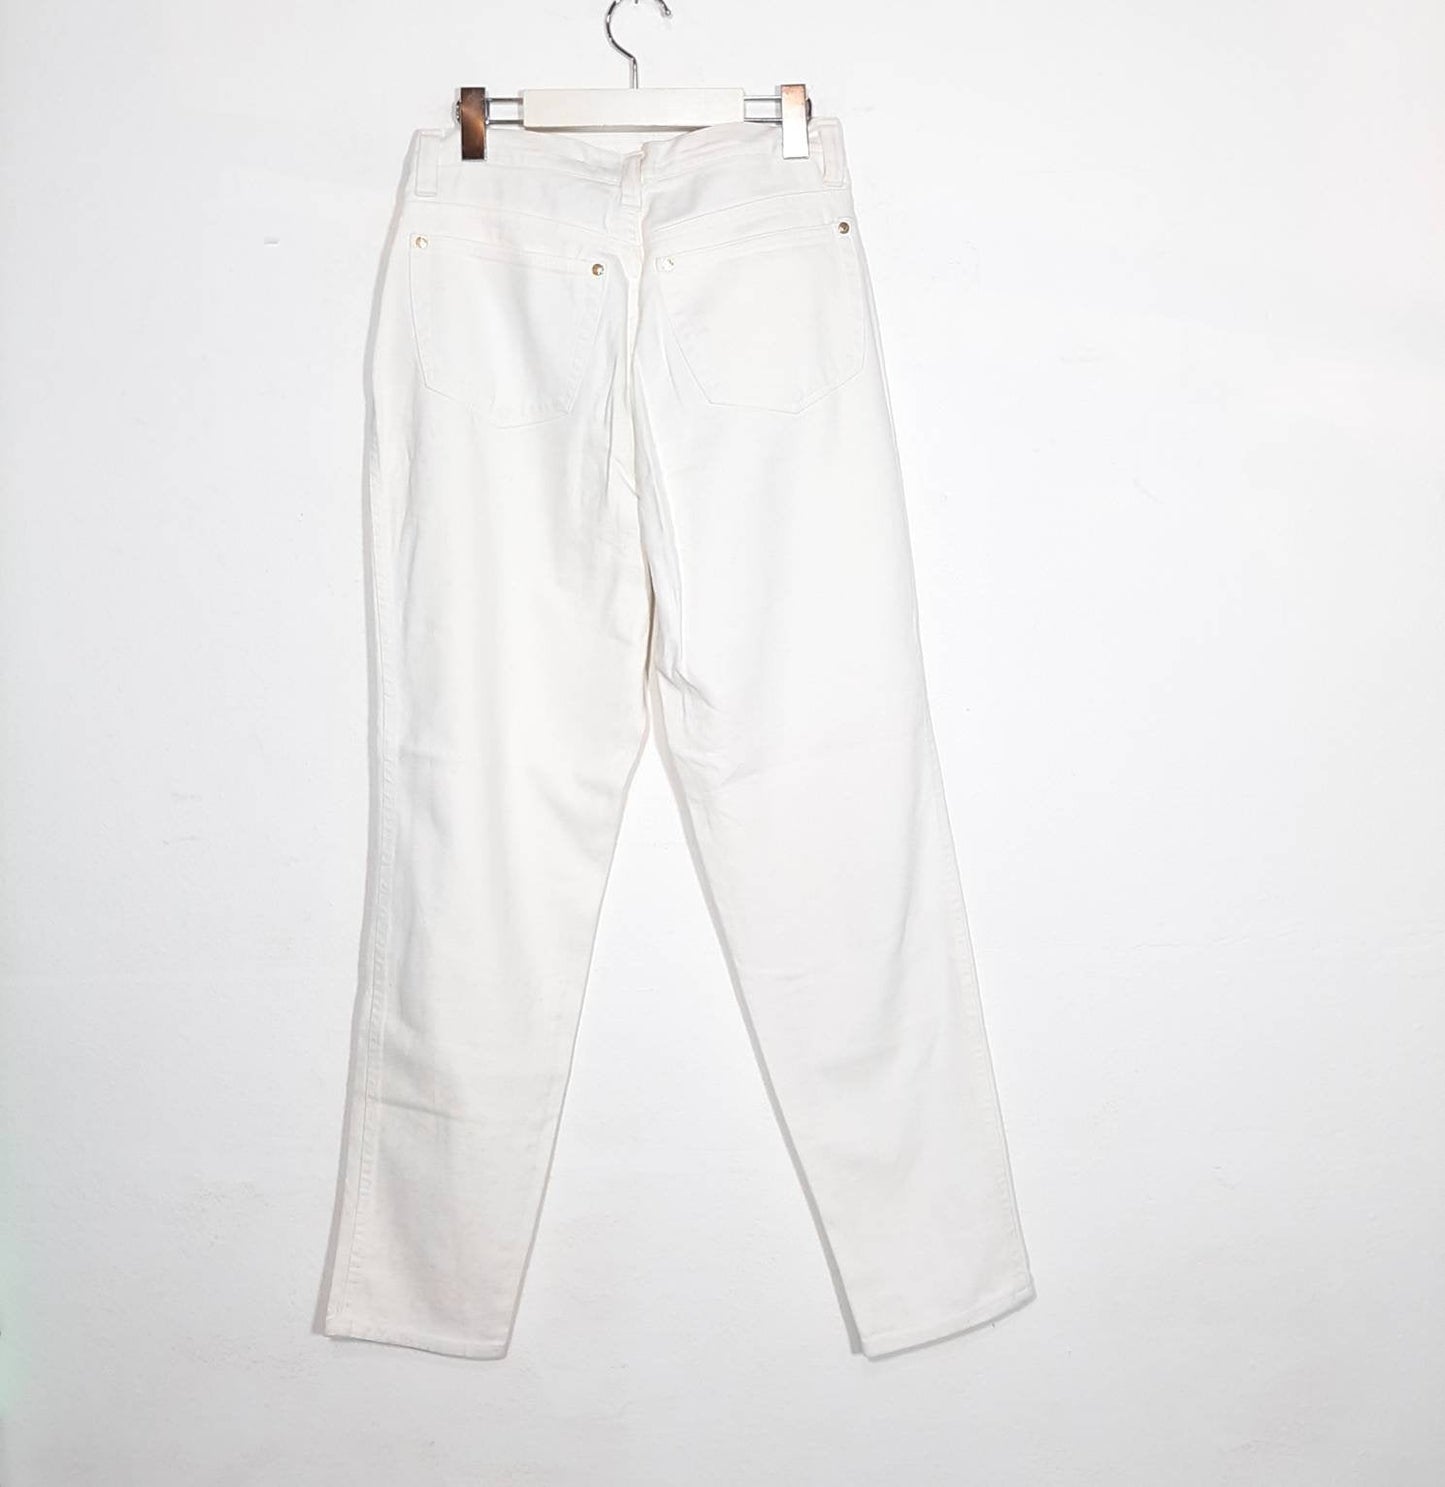 Versace Jeans signature white denim jeans with golden Medusa buttons sz 29 / 43 90s